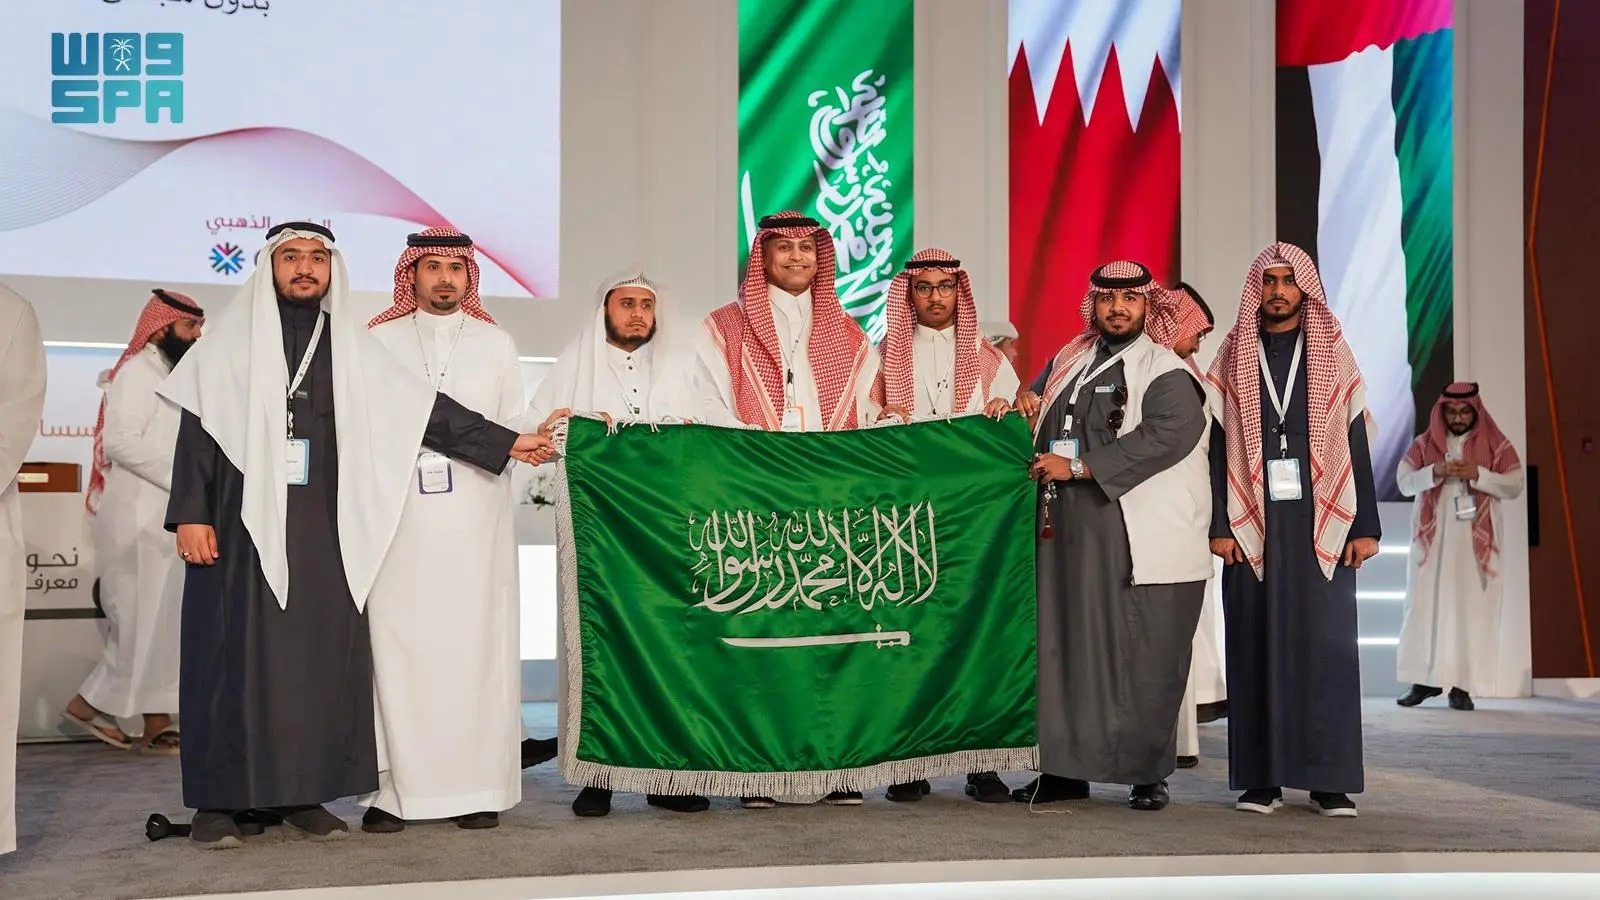  جامعة جازان تفوز بالمركزين الأولين في أسبوع قطر الثقافي